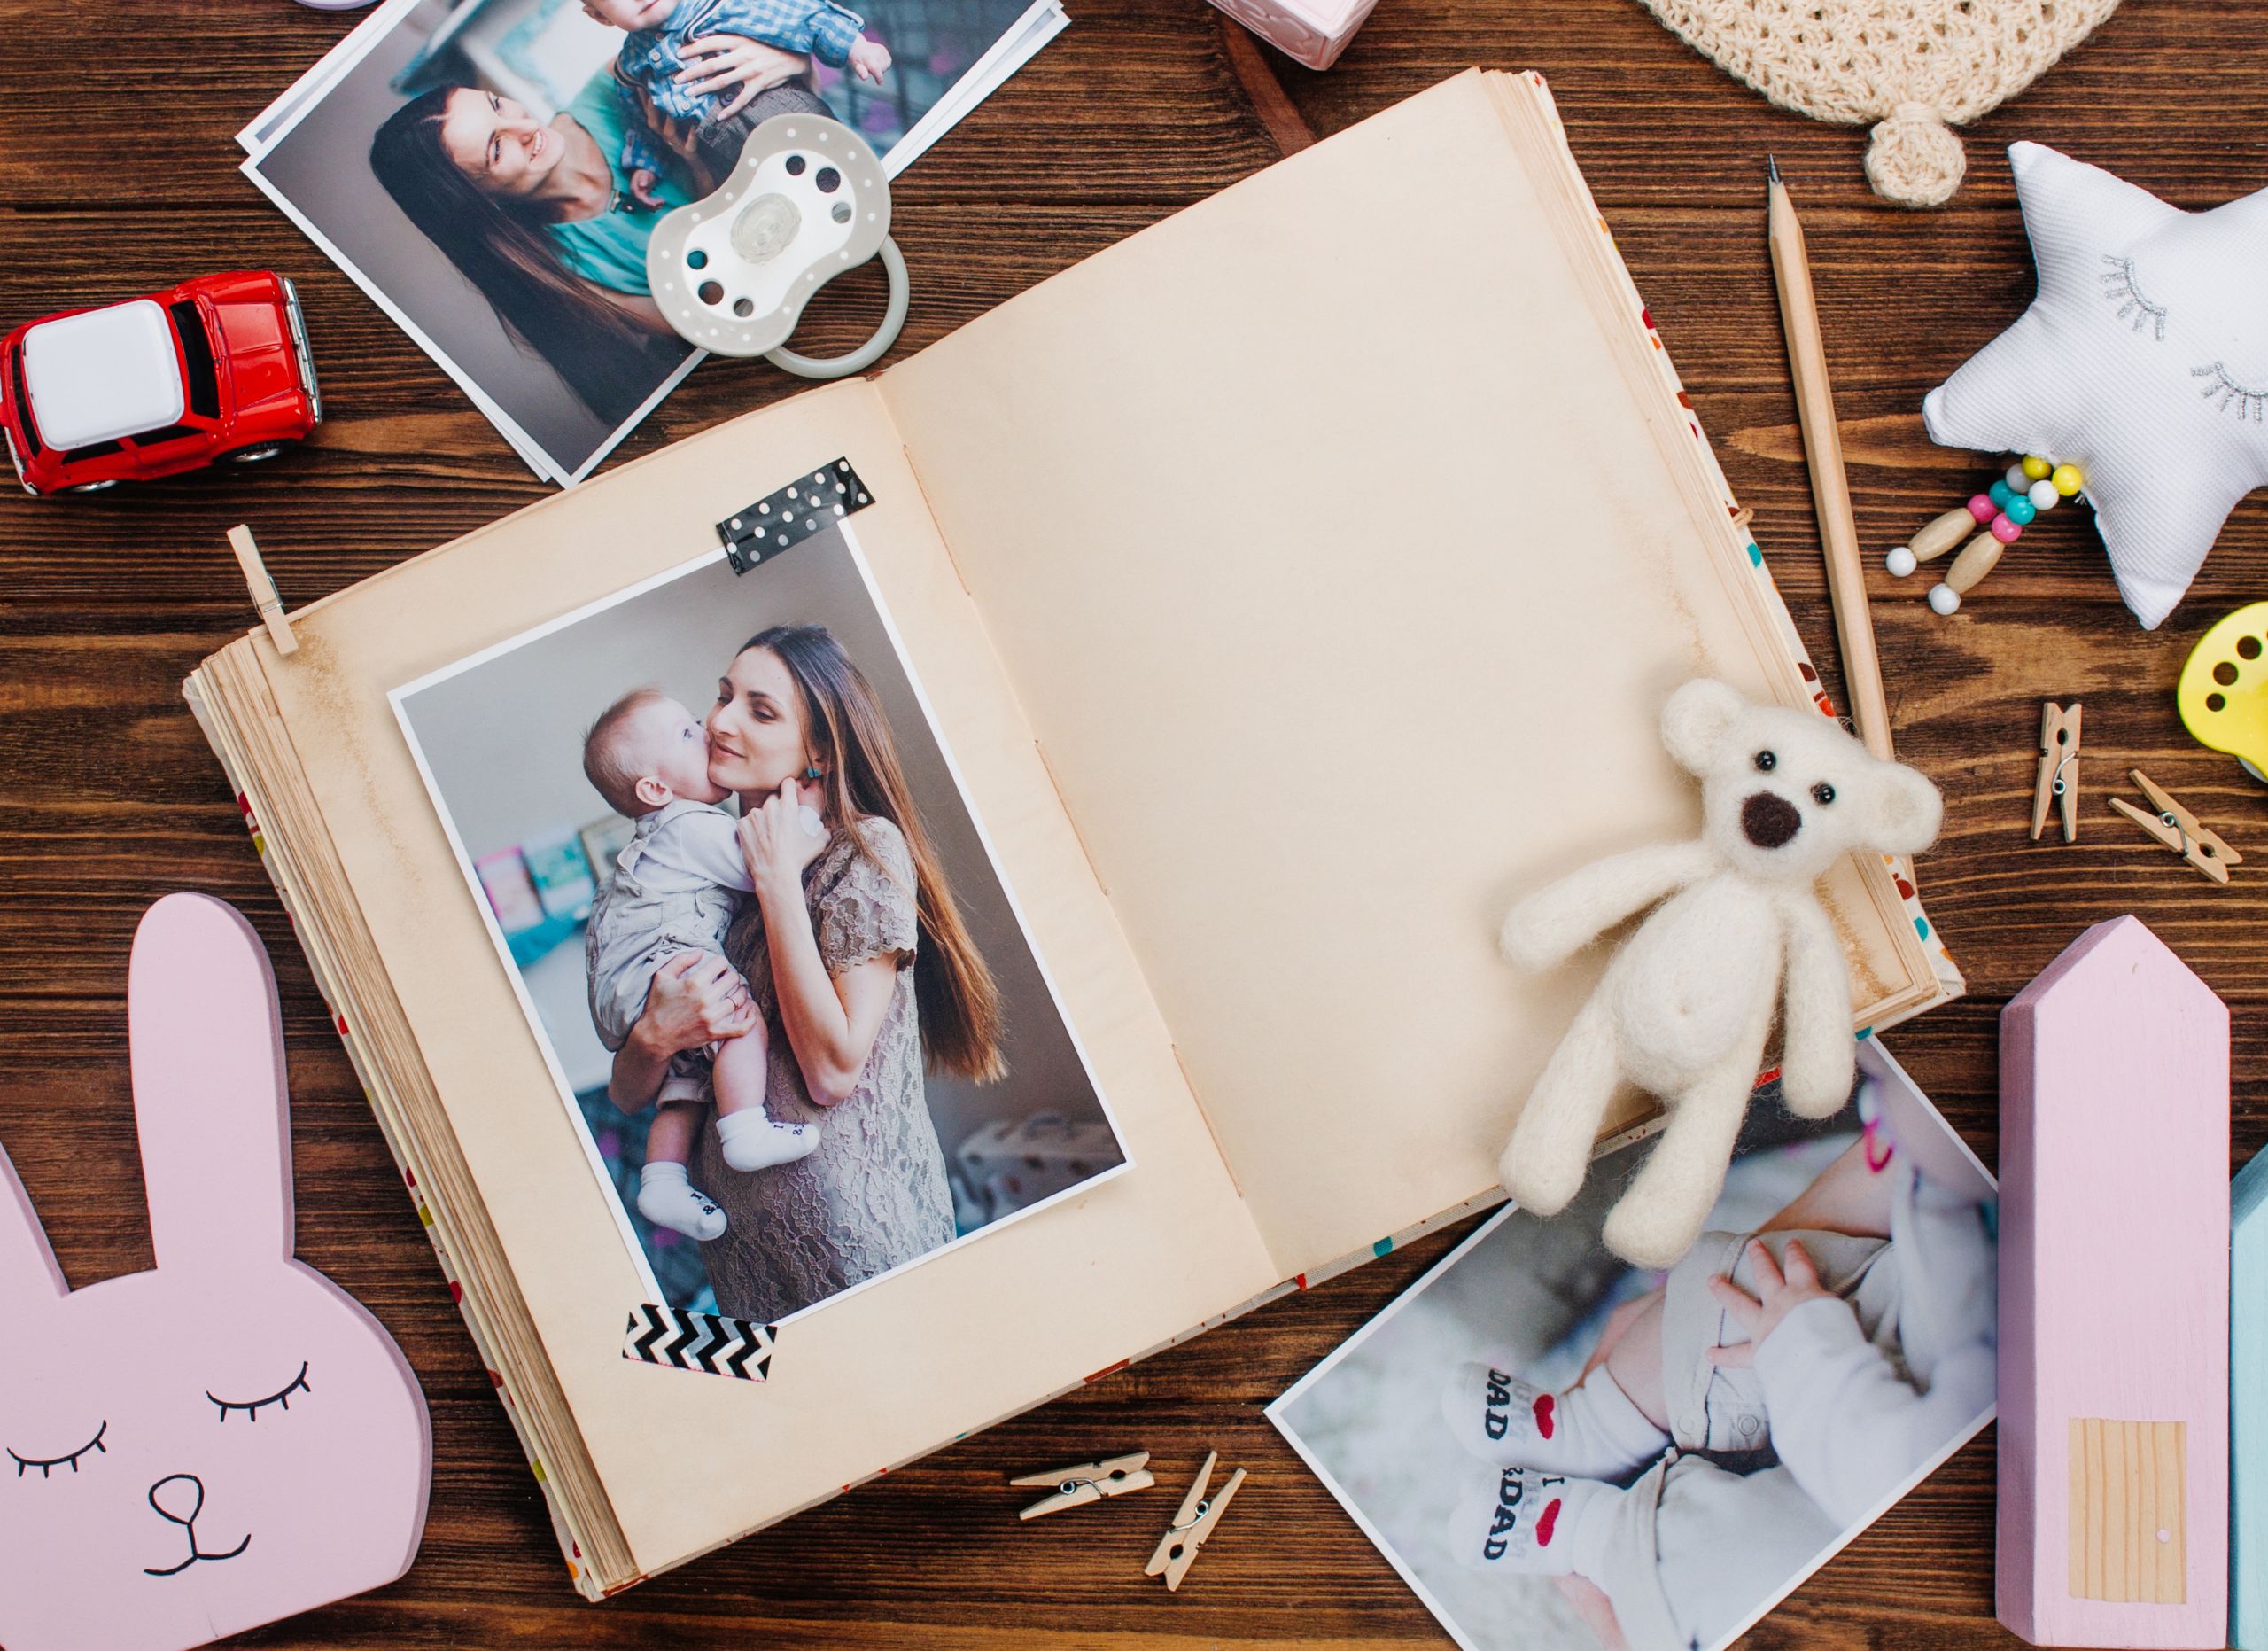 Jak vyrobit scrapbook - originální fotoalbum, které zvěční vaše vzpomínky